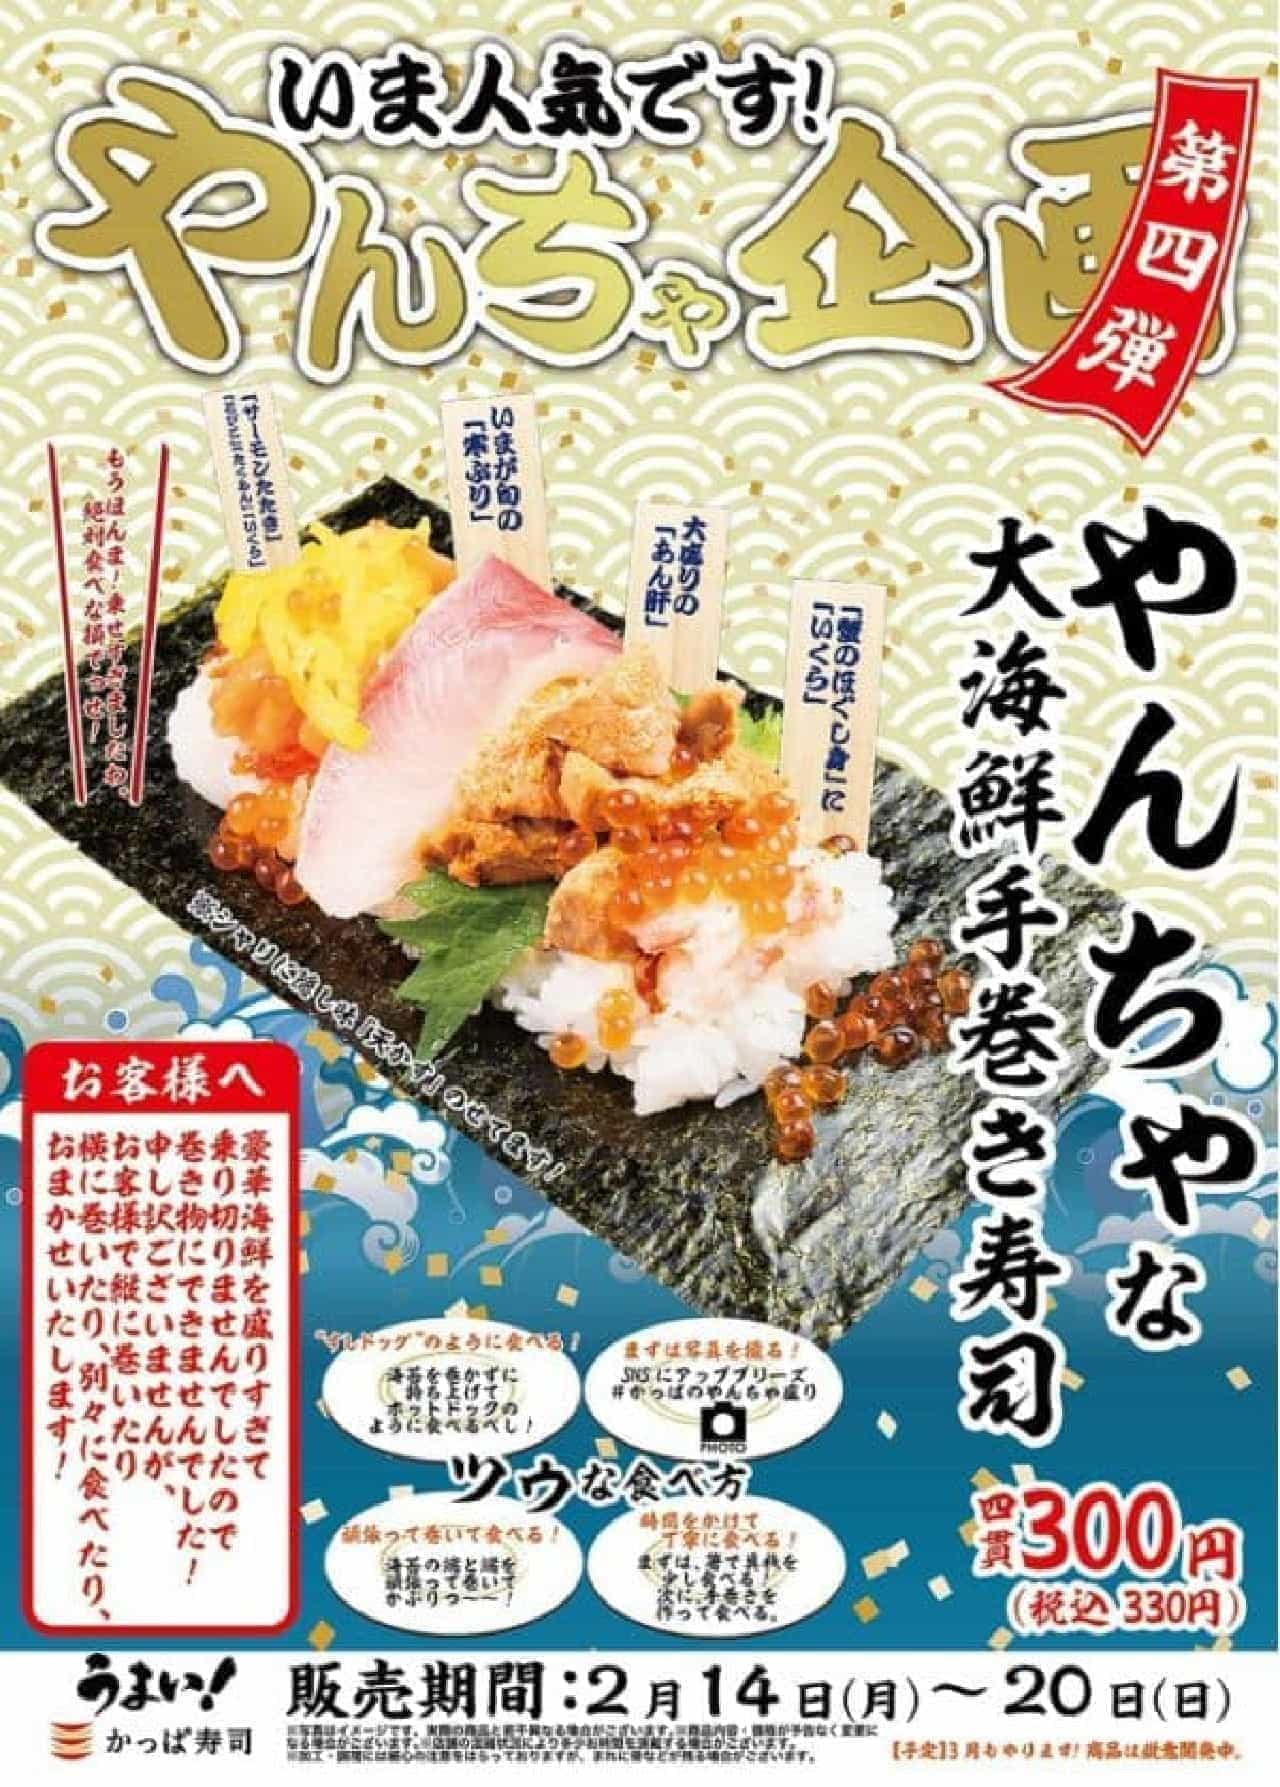 Kappa Sushi "Yancha Dai Kaisen Temakizushi